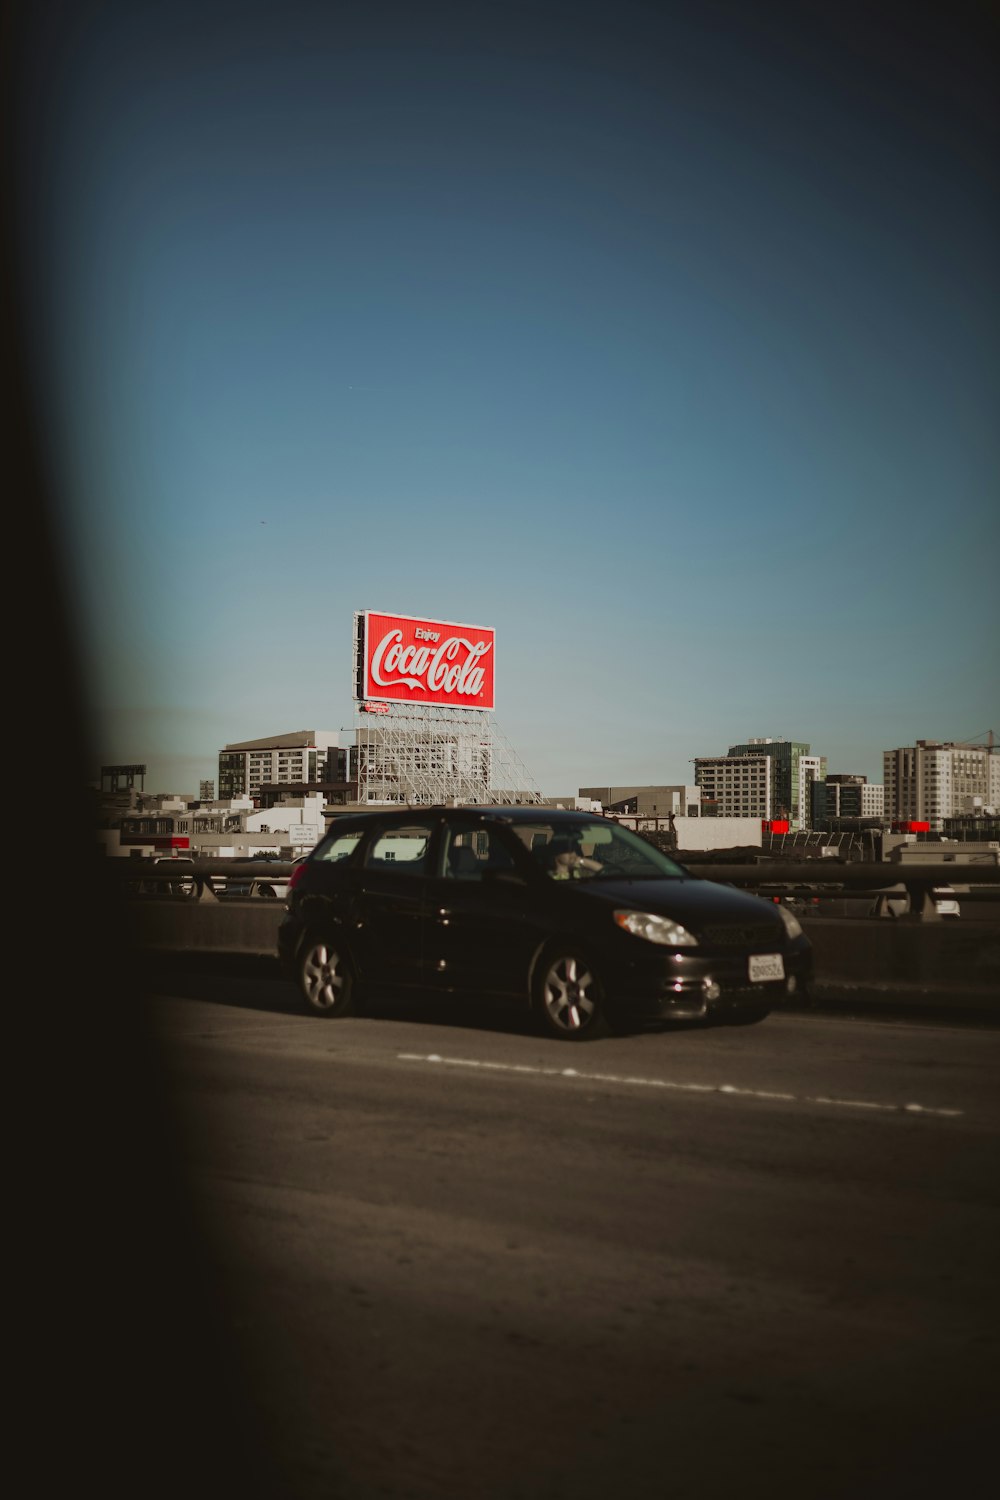 Coca-Cola signage